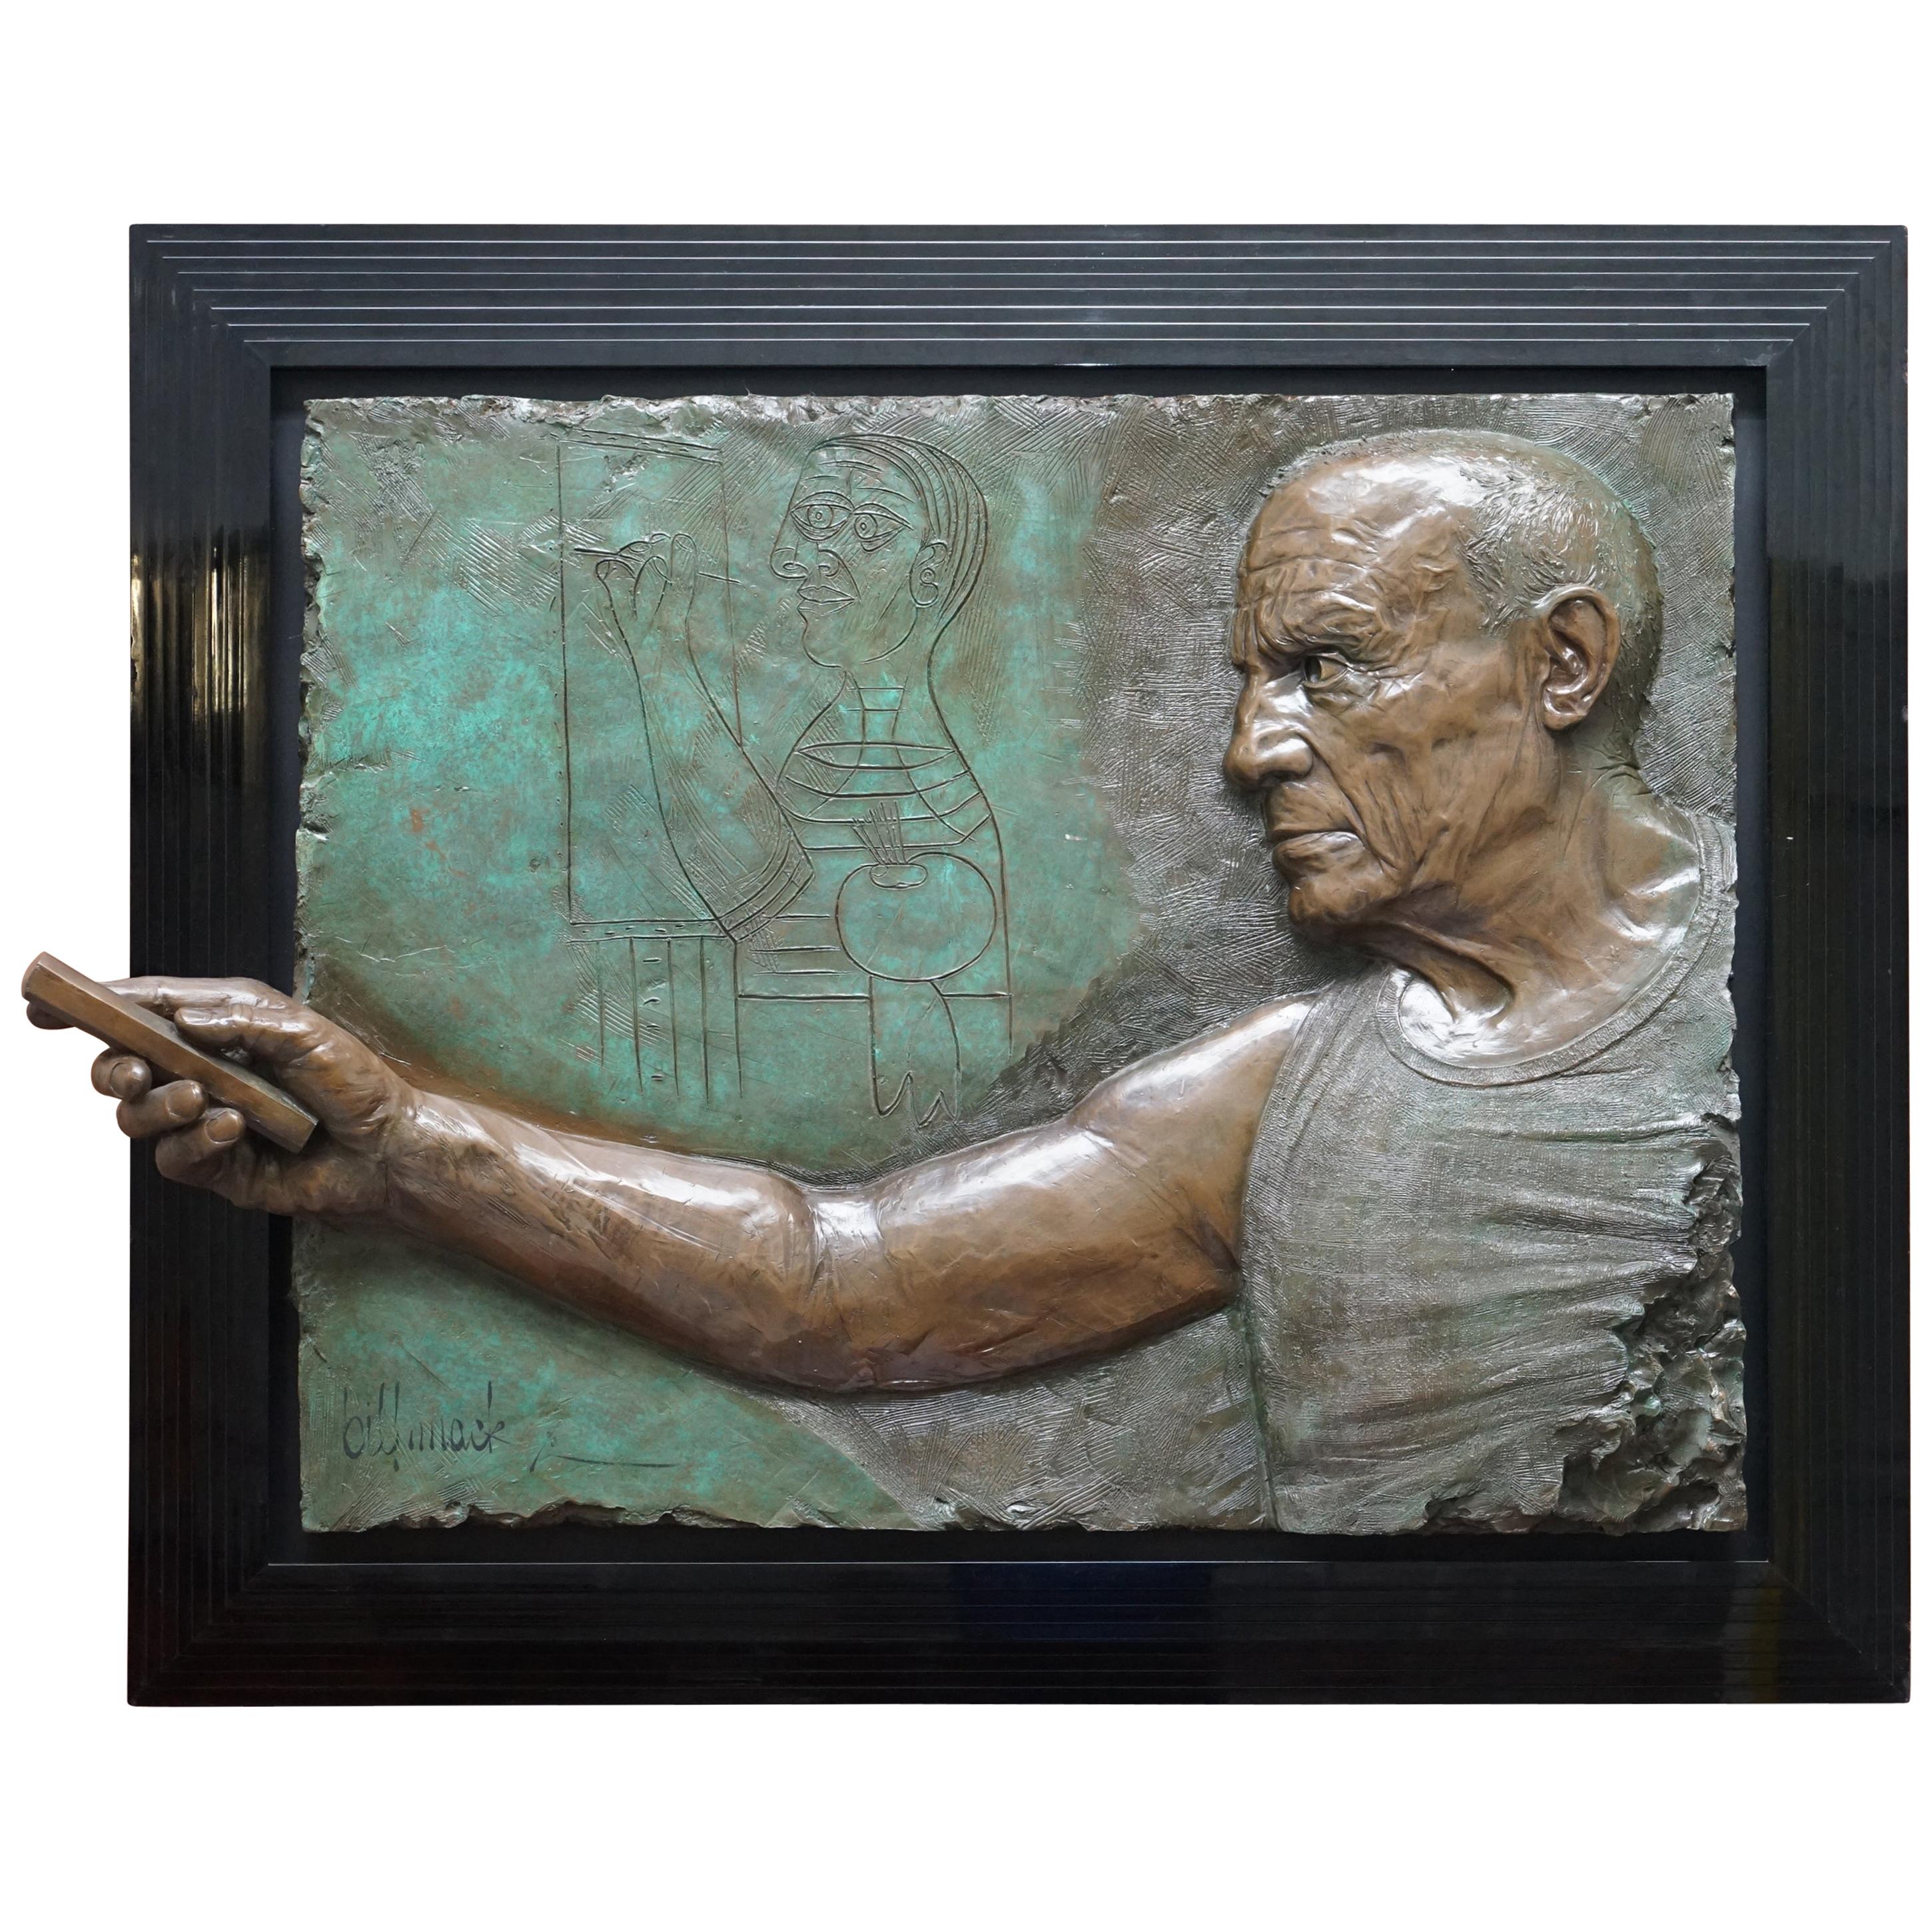 Limitierte Auflage 3/65 Bill Mack Signierte Hommage an Picasso Großes Bronzebild, signiert